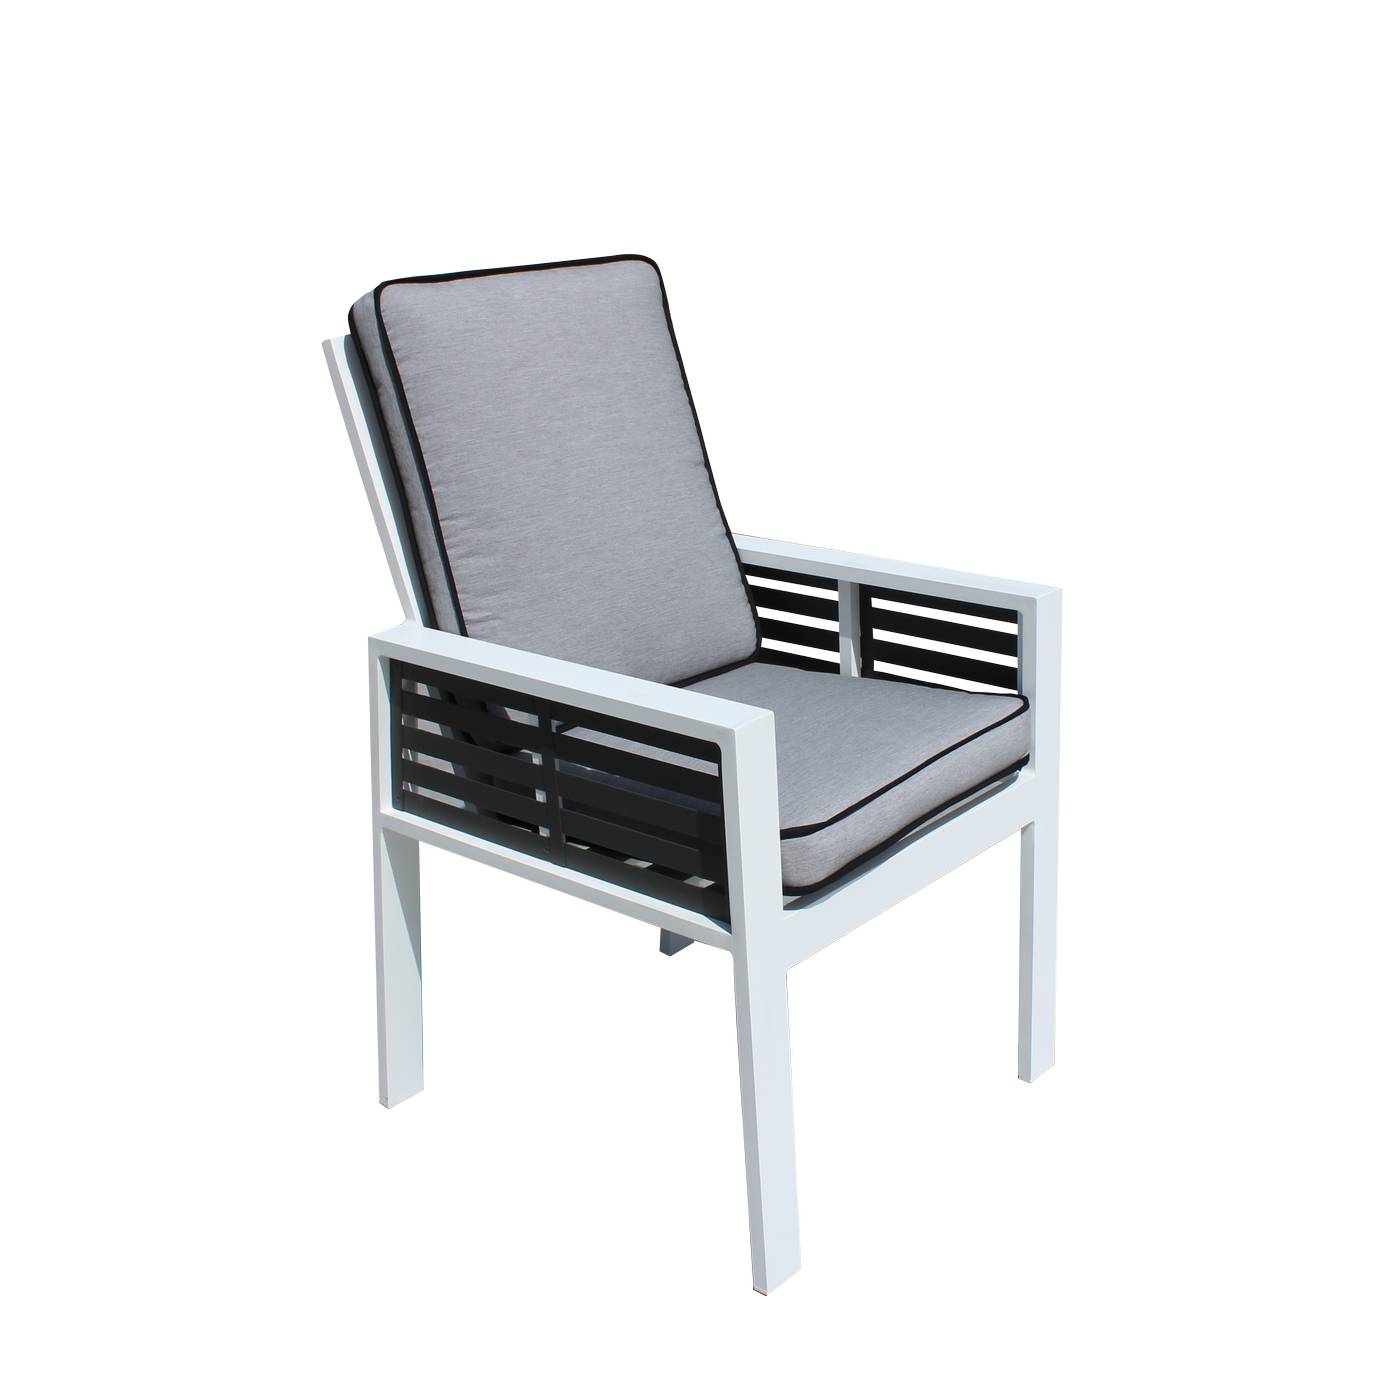 Exclusivo sillón de comedor de aluminio bicolor. Con cojines gran confort desenfundables.